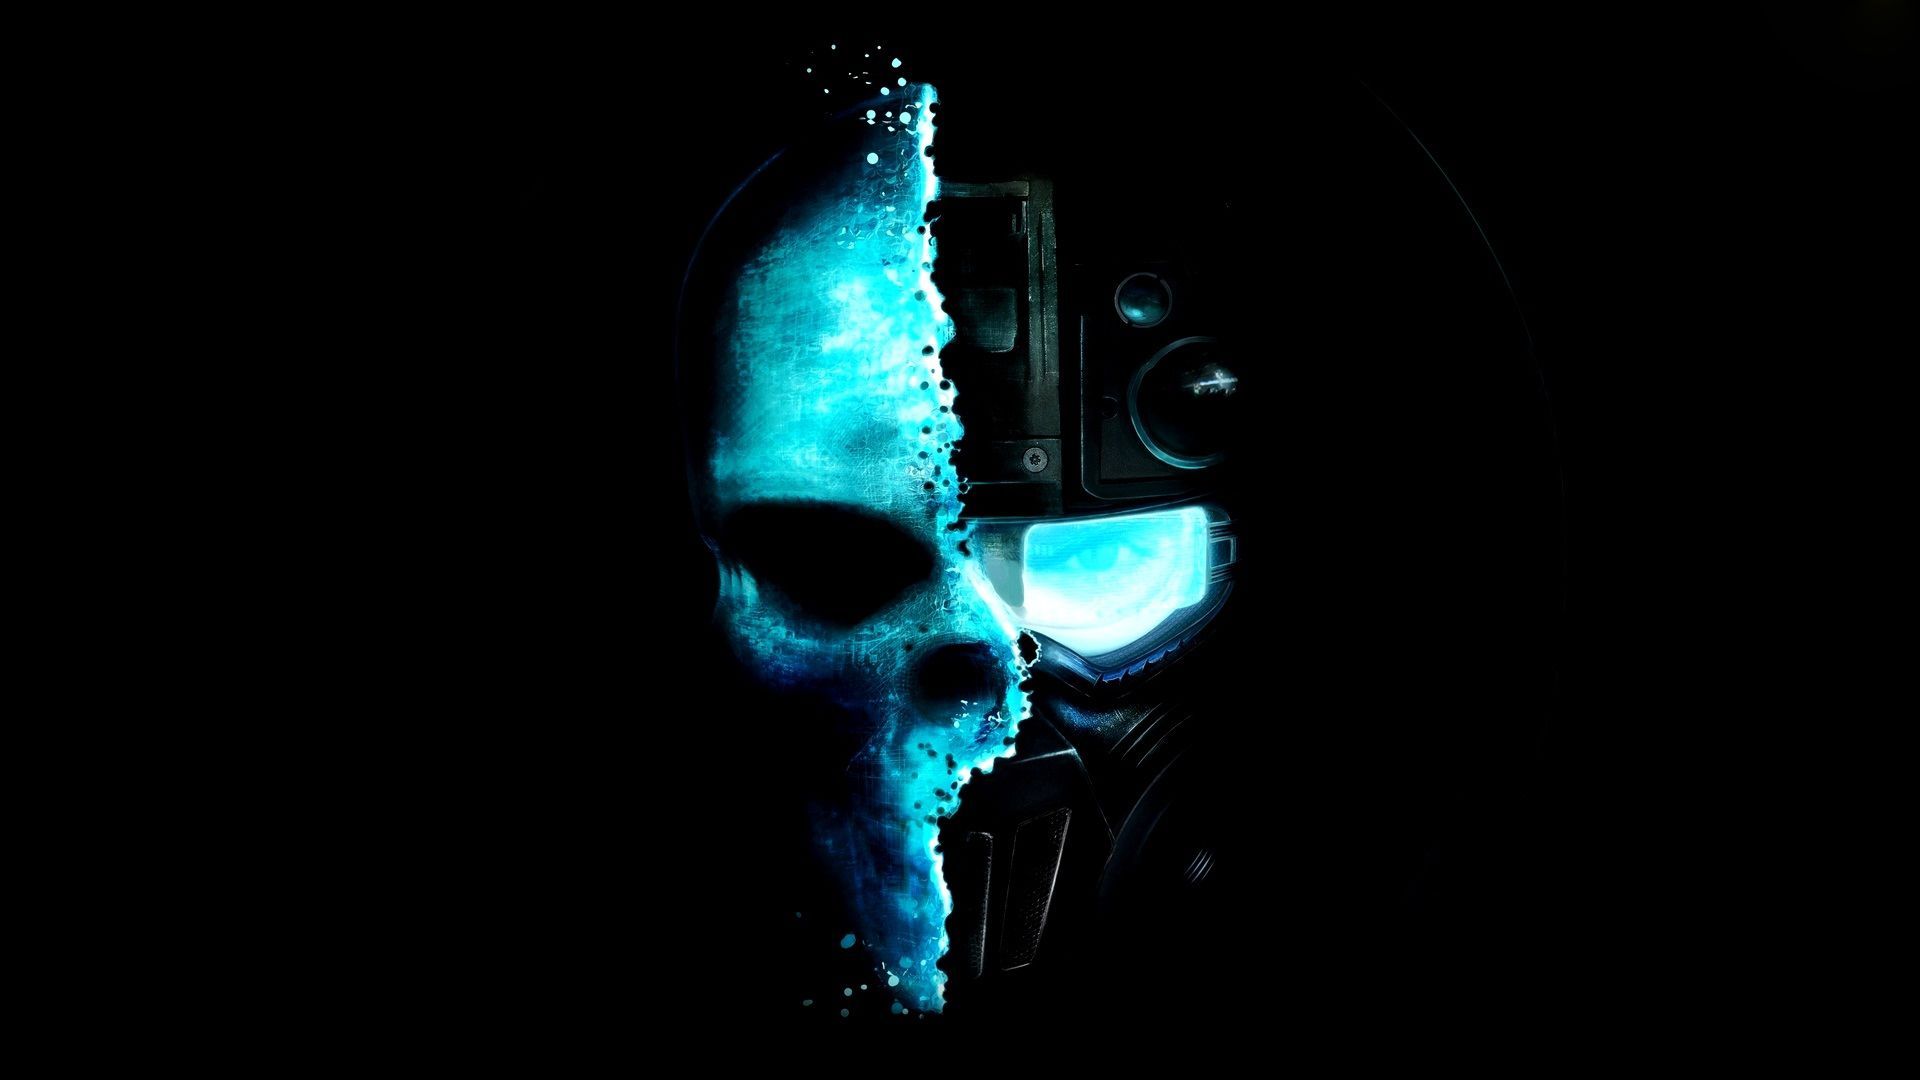 Cool Blue Skull Wallpaper PC Wallpaper. Wallpaper Screen. Skull wallpaper, Tom clancy ghost recon, Gaming wallpaper